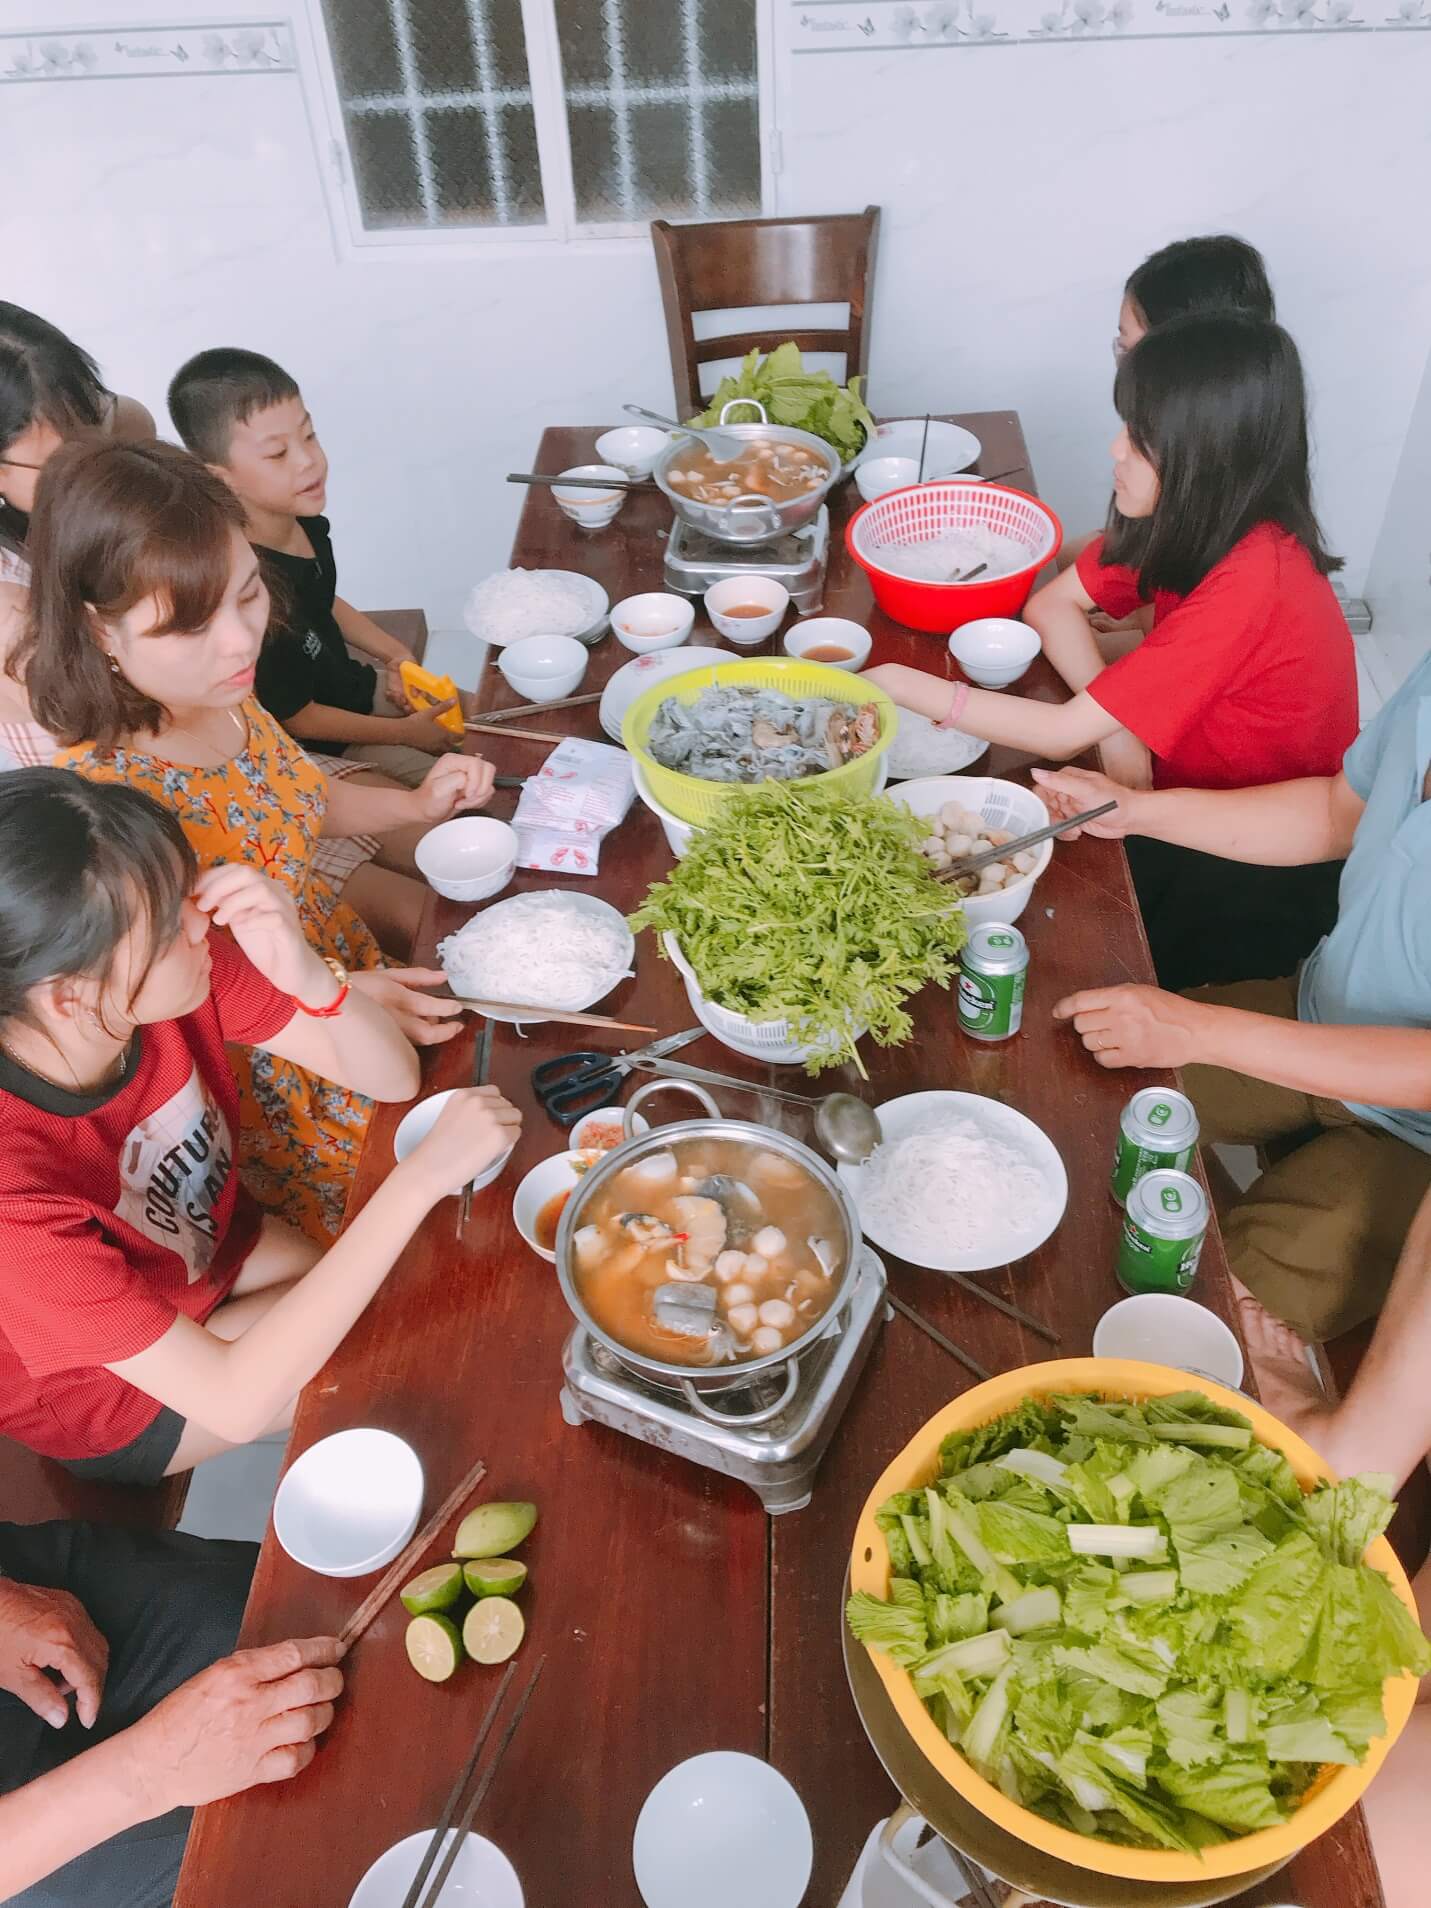 “Nơi nghỉ dưỡng vượt mong đợi” với căn hộ thủy tiên’s house ở Vũng Tàu